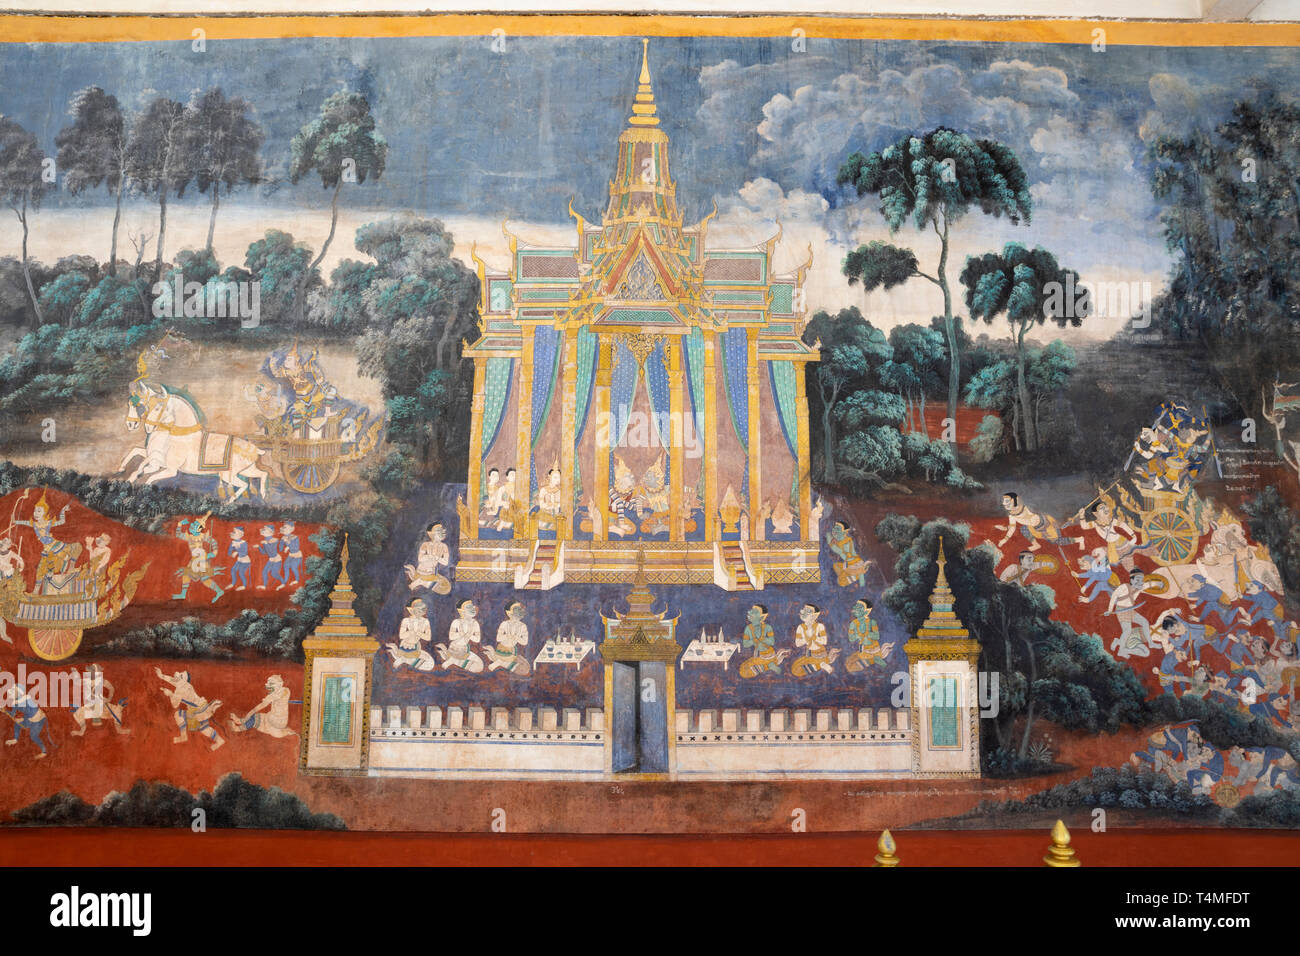 Dettaglio del Ramayana murale nel Pagoda d'argento complesso presso il Palazzo Reale di composto, Phnom Penh, Cambogia, Asia sud-orientale, Asia Foto Stock